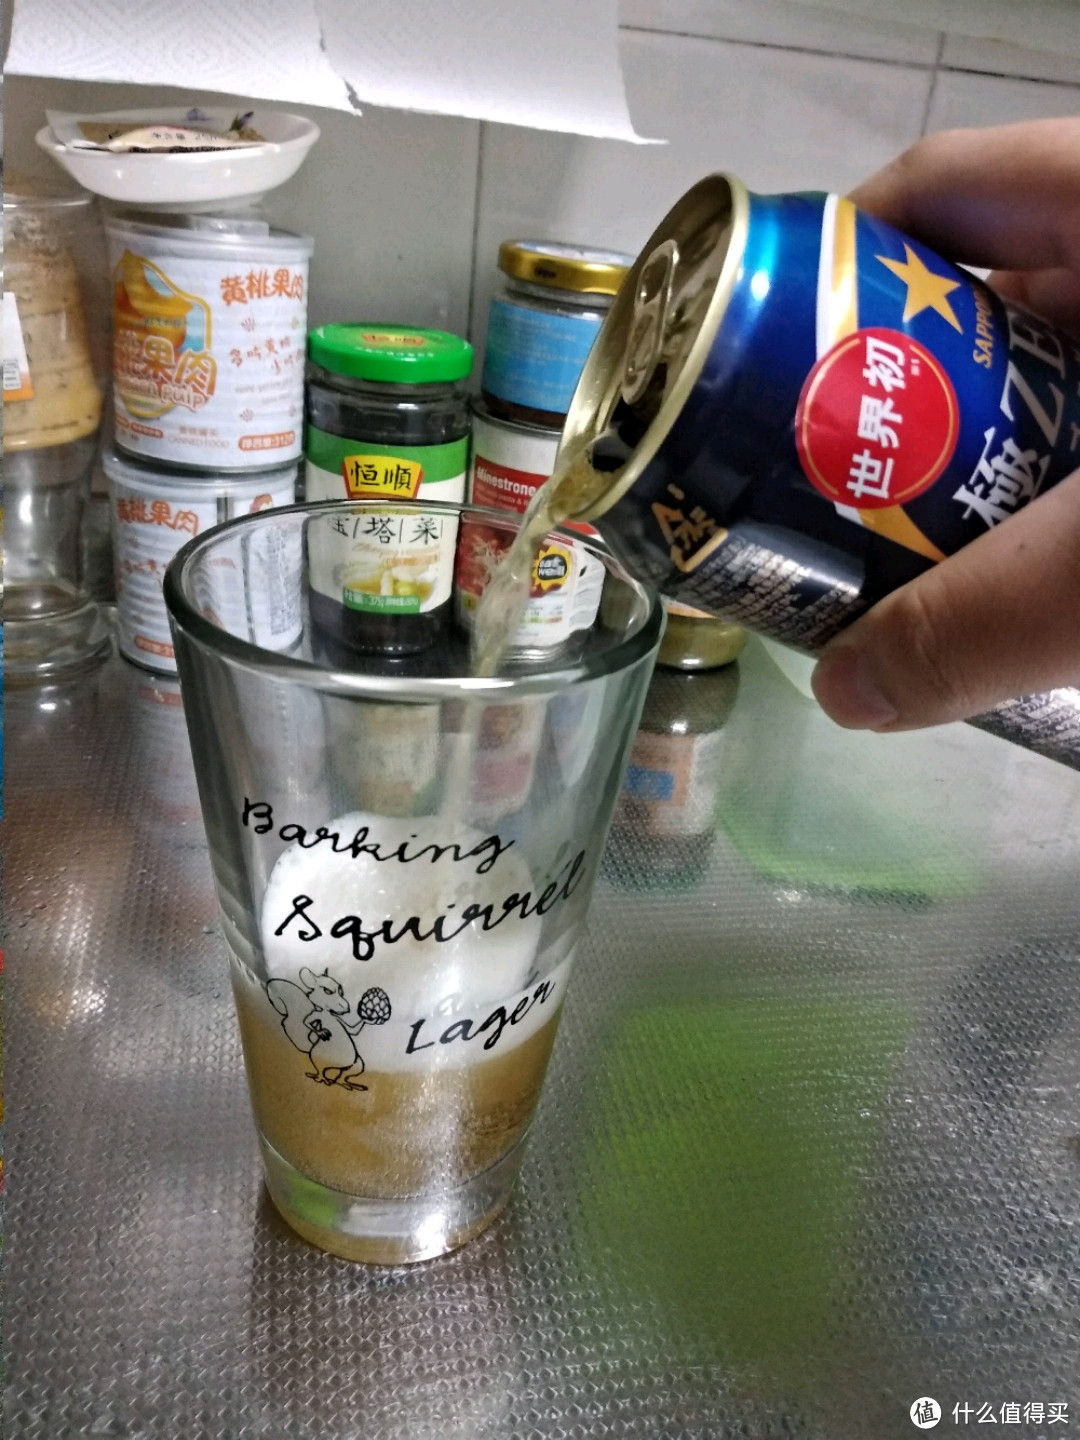 适合尿酸高的酒友的福音？来自北海道的札幌三宝乐无嘌呤啤酒试饮体验